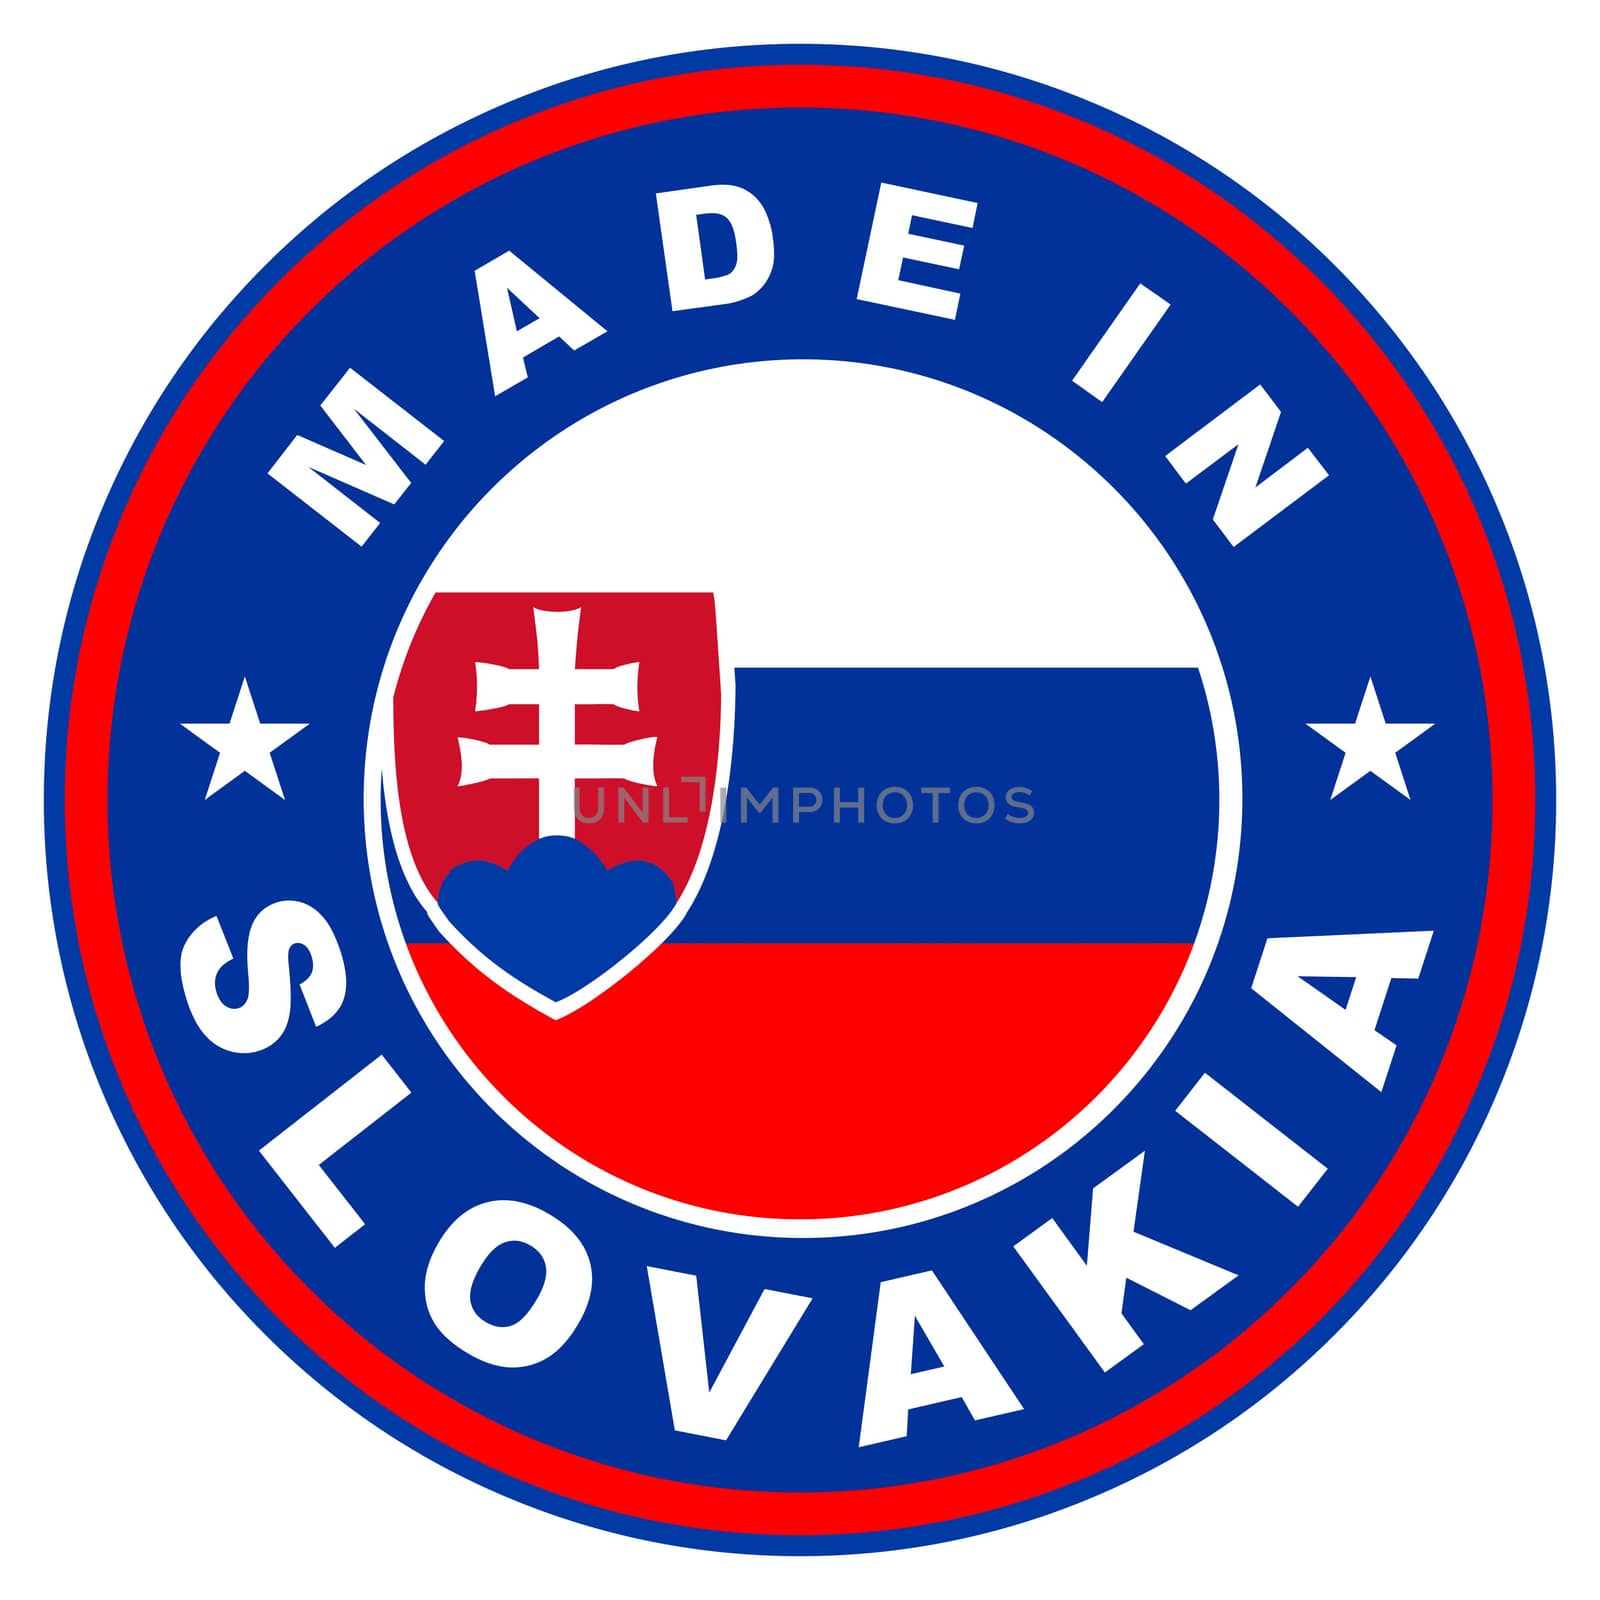 made in slovakia by tony4urban